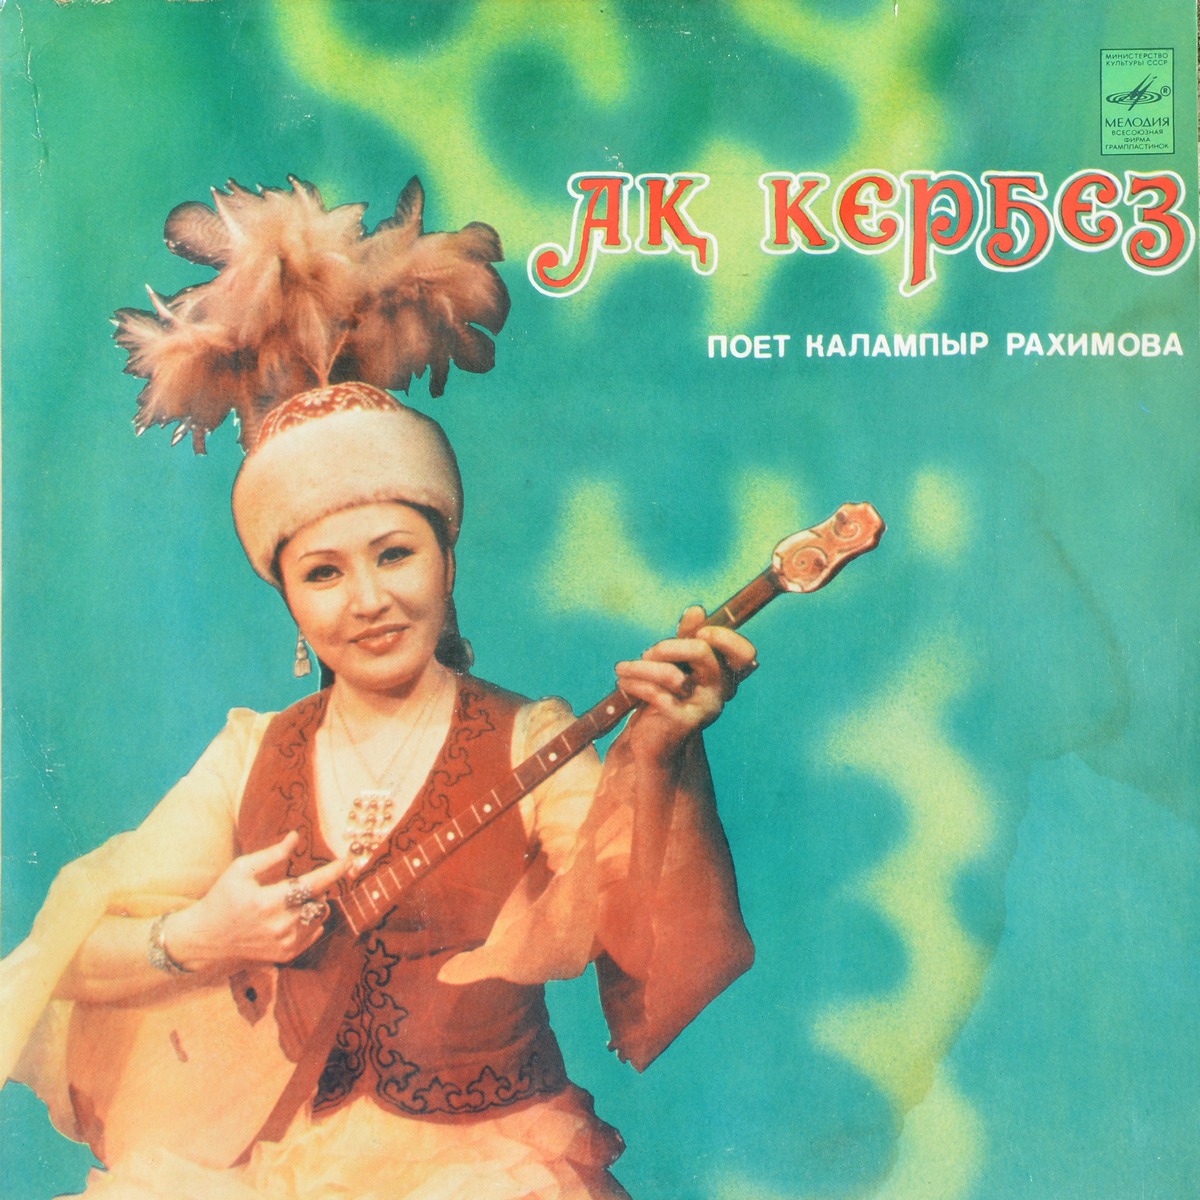 Калампыр РАХИМОВА «Поёт Калампыр Рахимова в собственном сопровождении на домбре» — на казахском языке